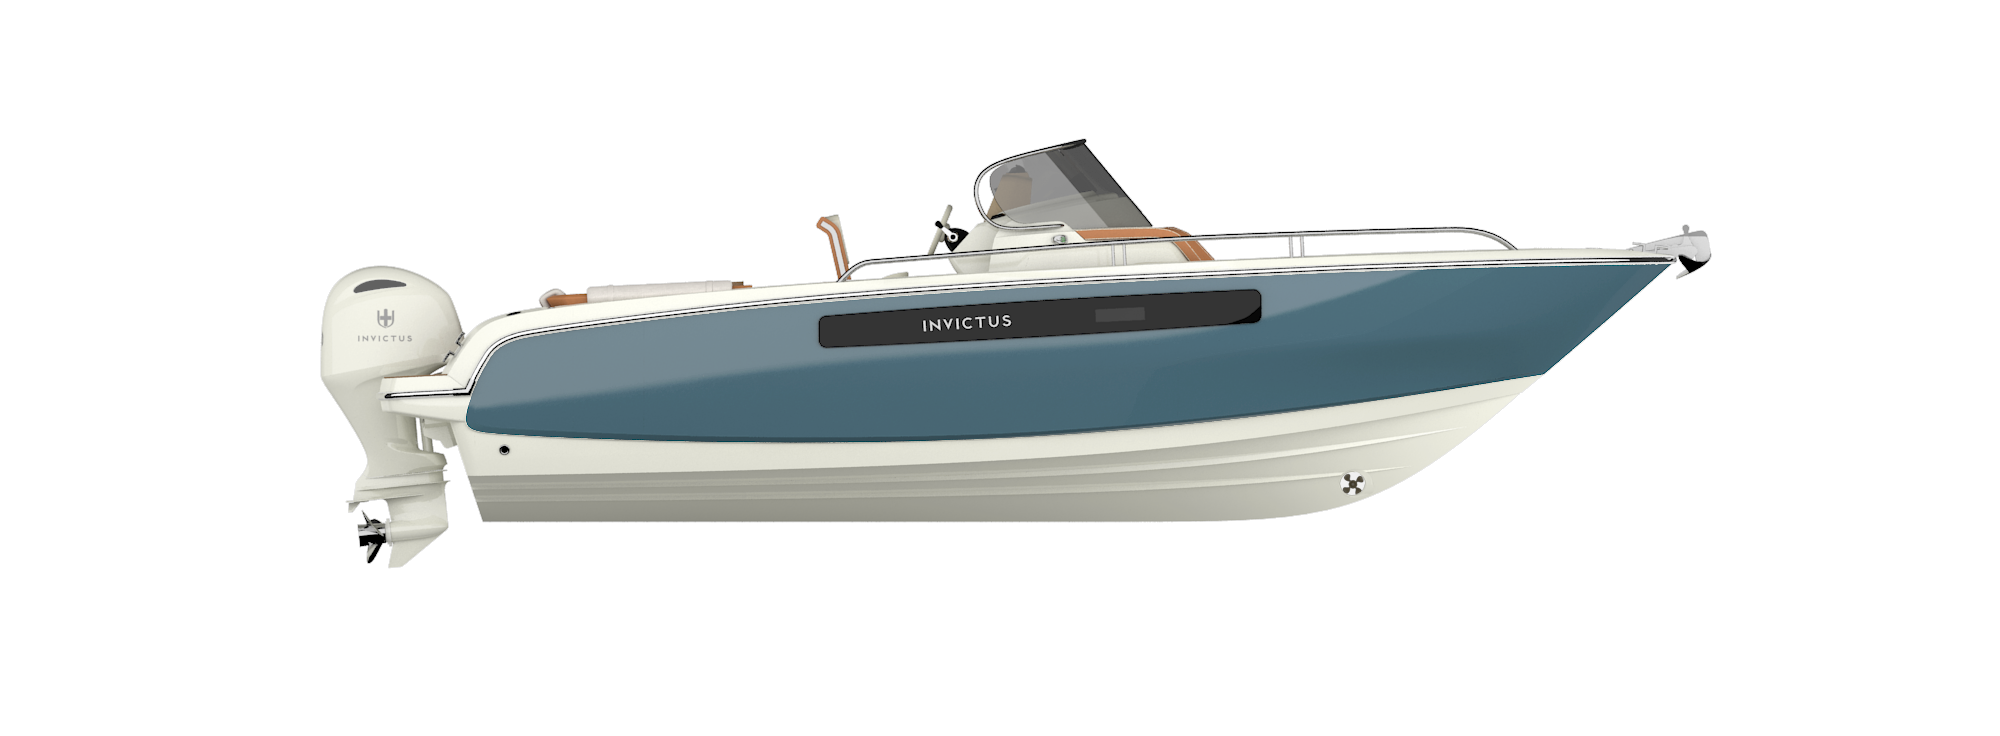 The Invictus Yacht CX270